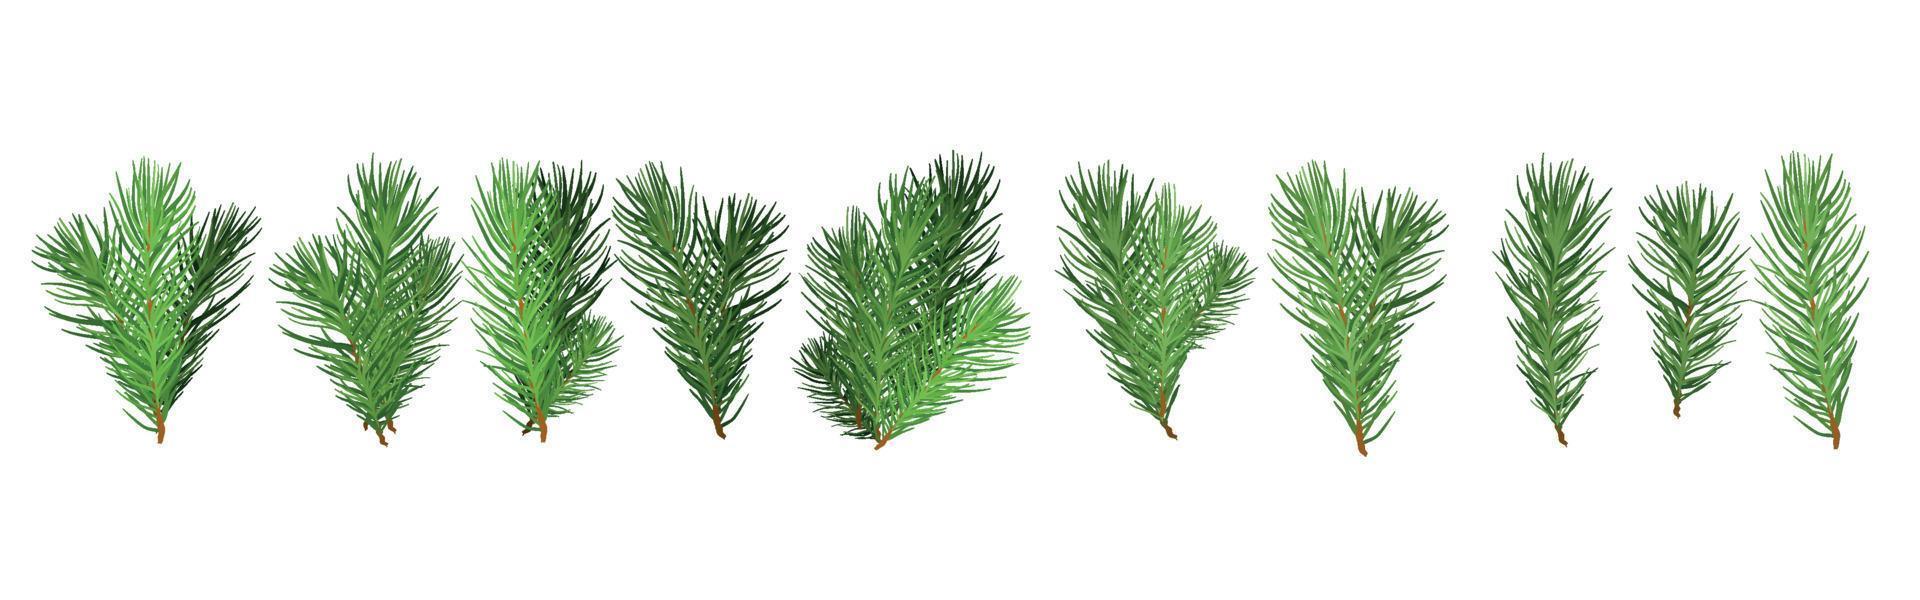 eine reihe von grünen zweigen des weihnachtsbaums für ein weihnachtsdekor. zweige tanne, kiefer isoliert. vektor